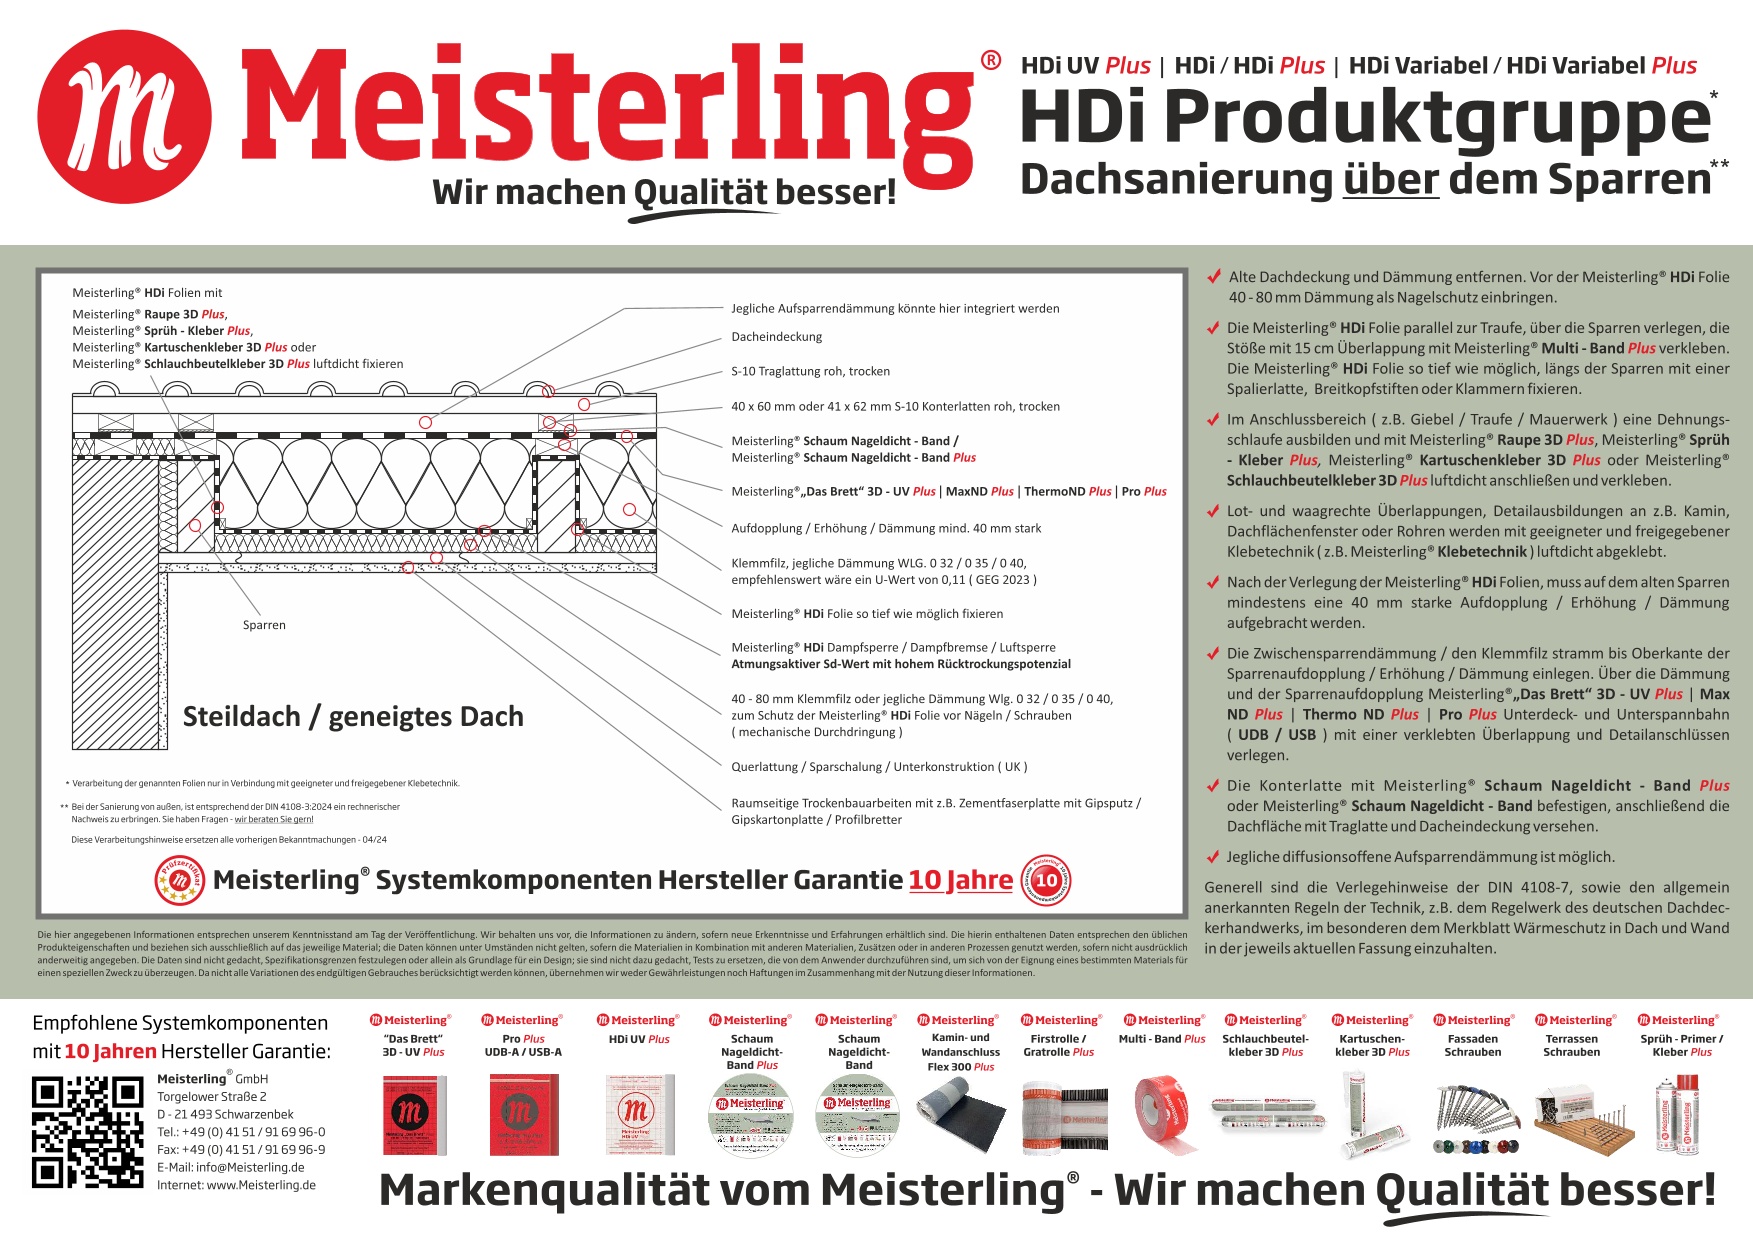 Meisterling HDi + HDi Variabel - Dachsanierung über dem Sparren